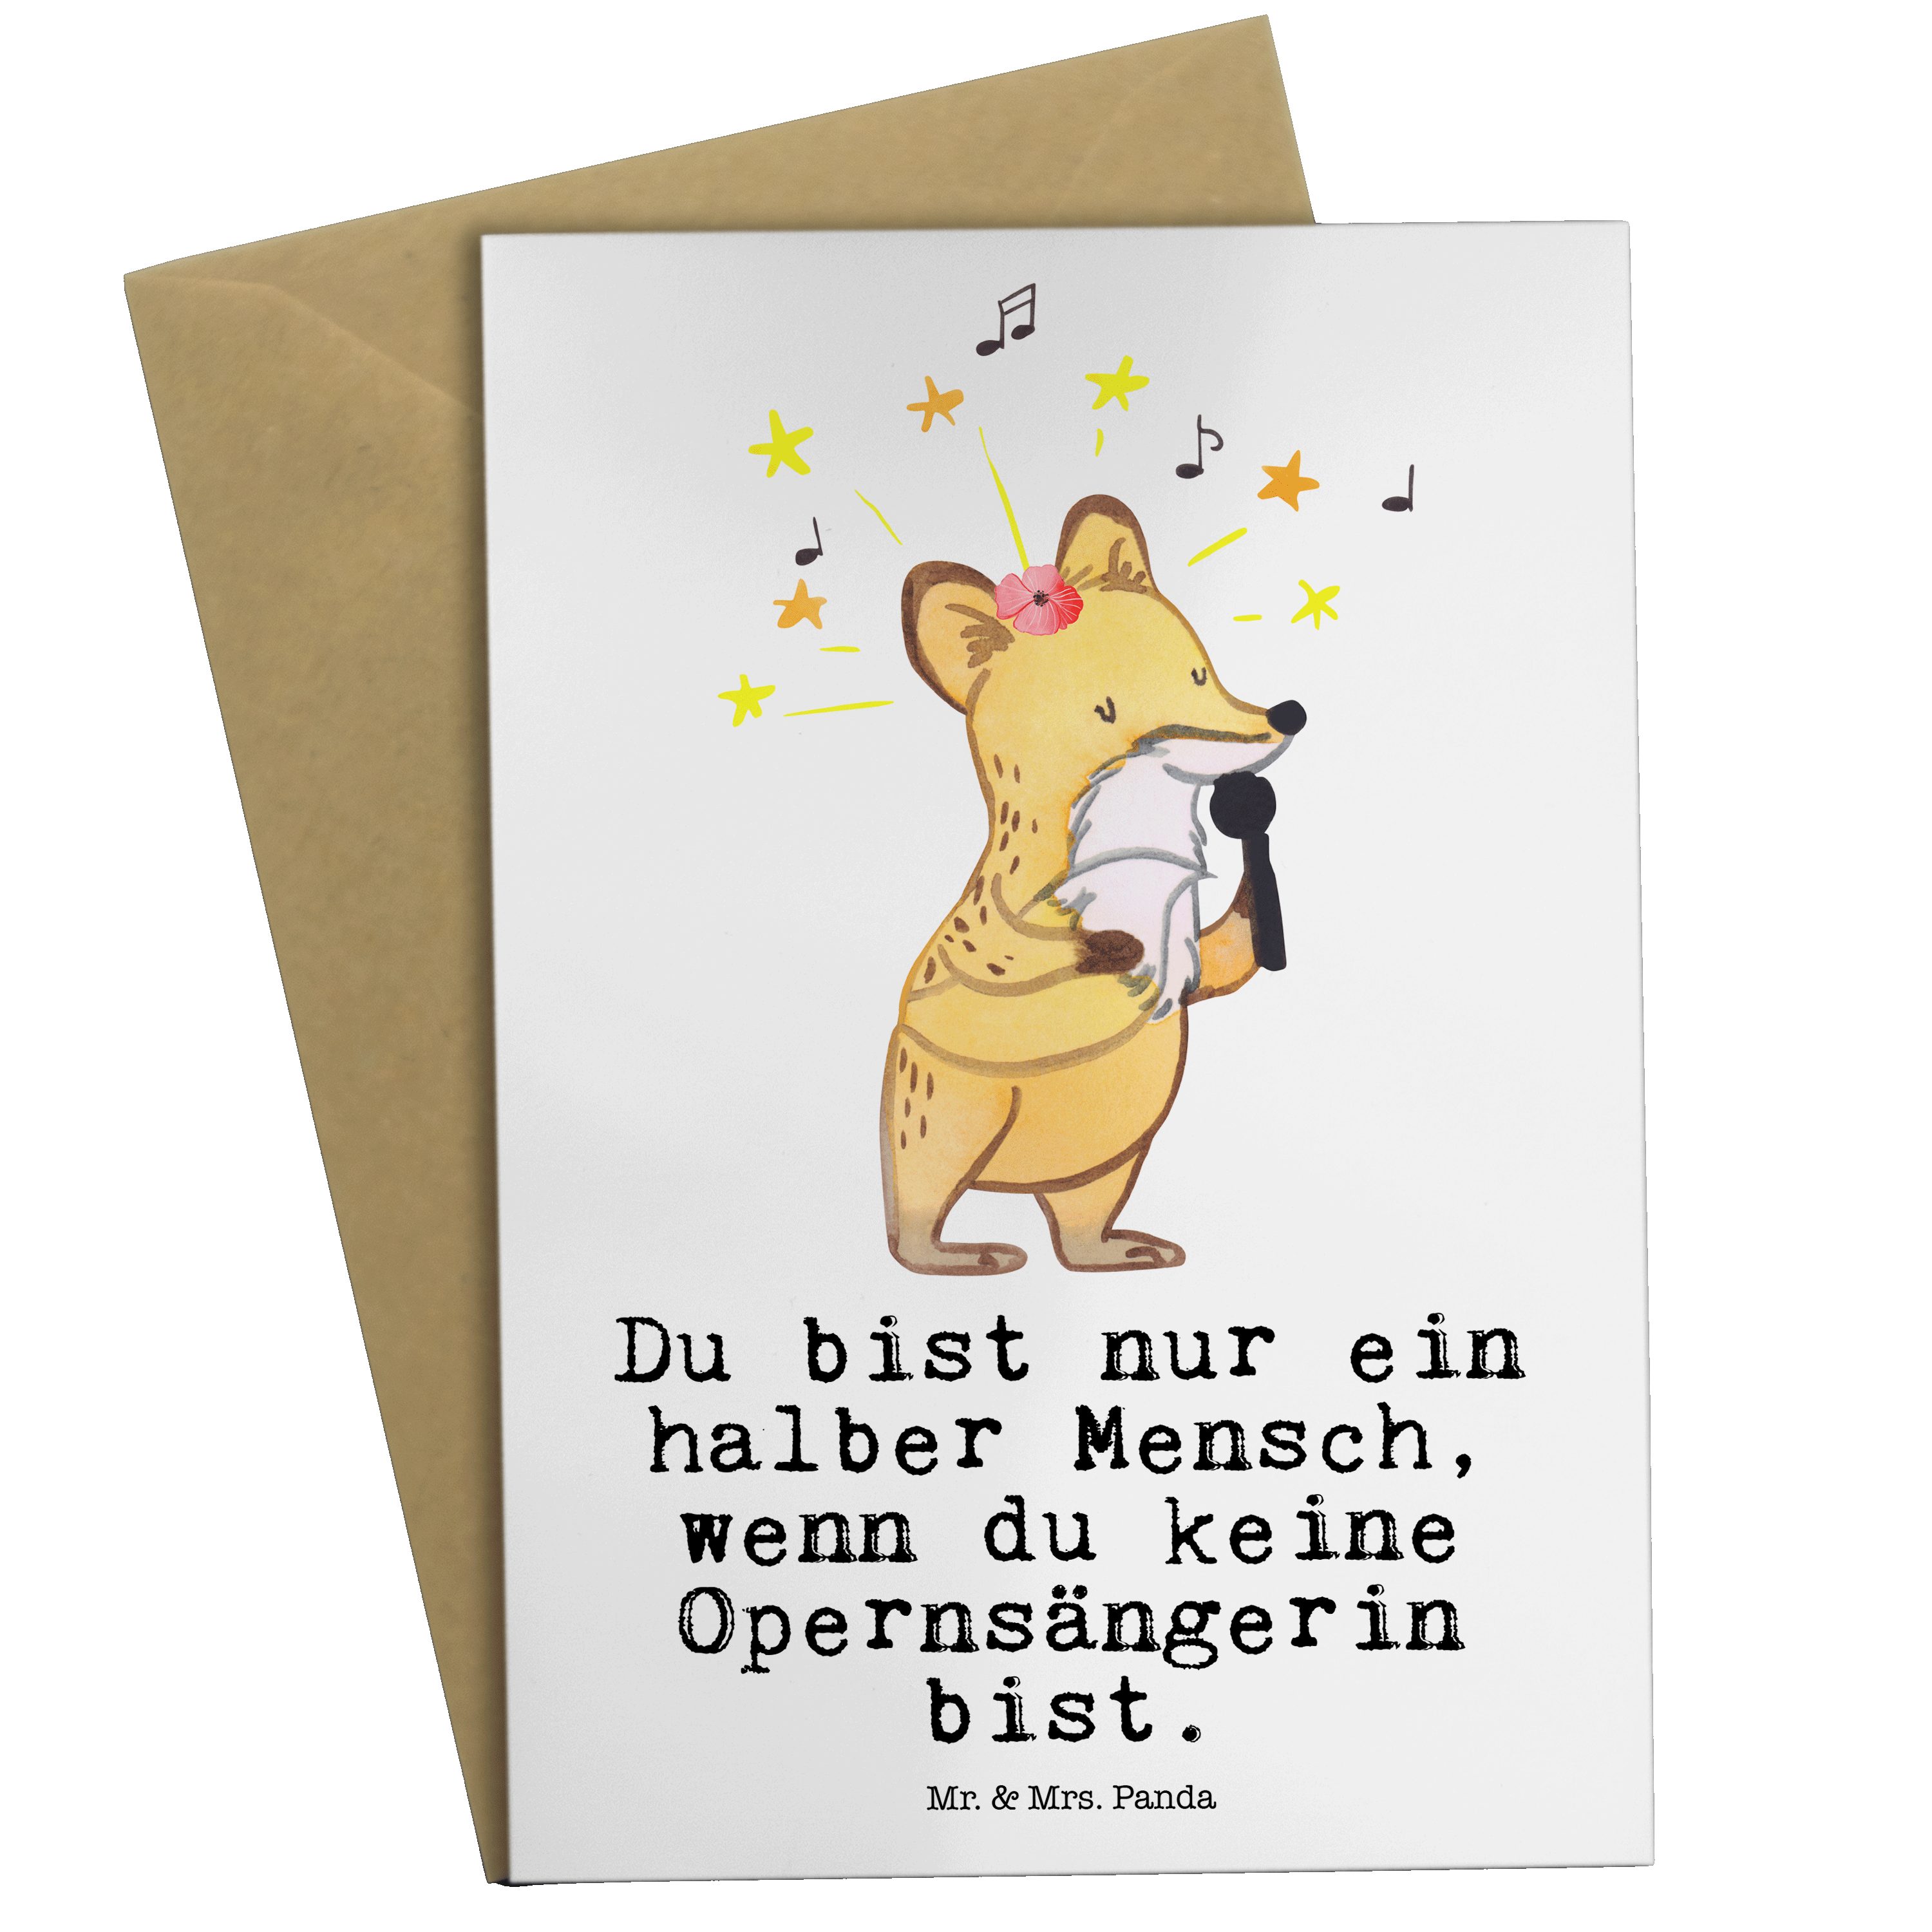 Mr. & Mrs. Panda Grußkarte Opernsängerin mit Herz - Weiß - Geschenk, Geburtstagskarte, Hochzeits